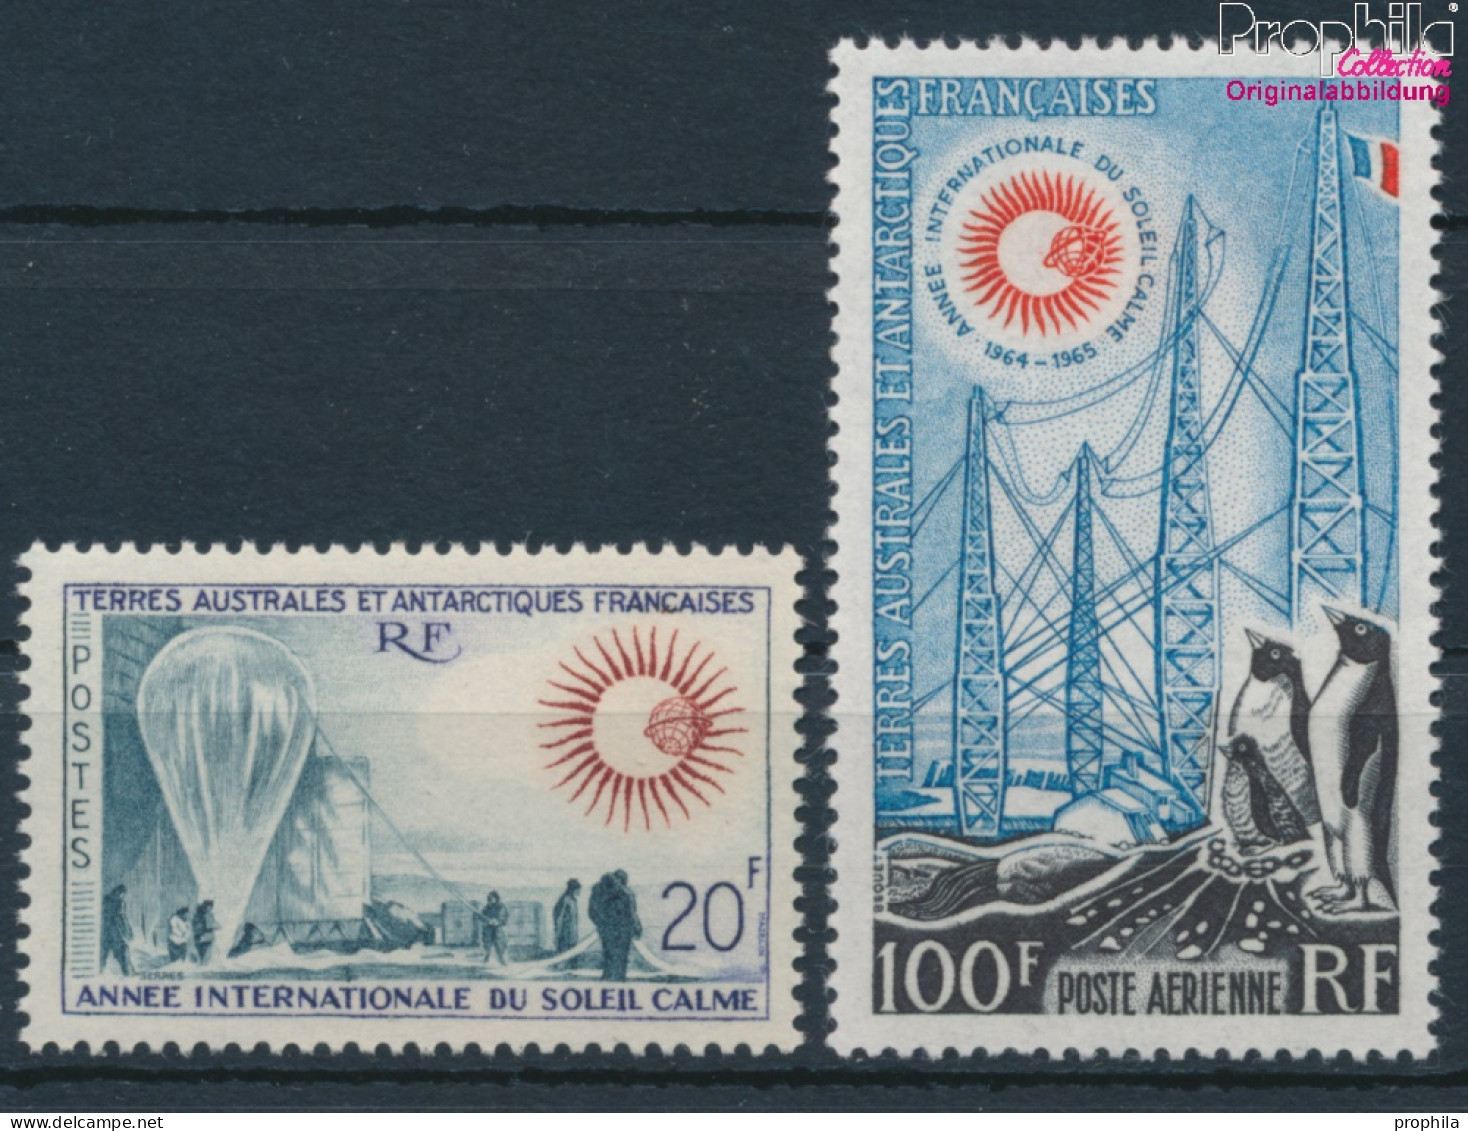 Französ. Gebiete Antarktis 29-30 (kompl.Ausg.) Postfrisch 1963 Ruhige Sonne - Ballons, Pinguine (10174647 - Neufs